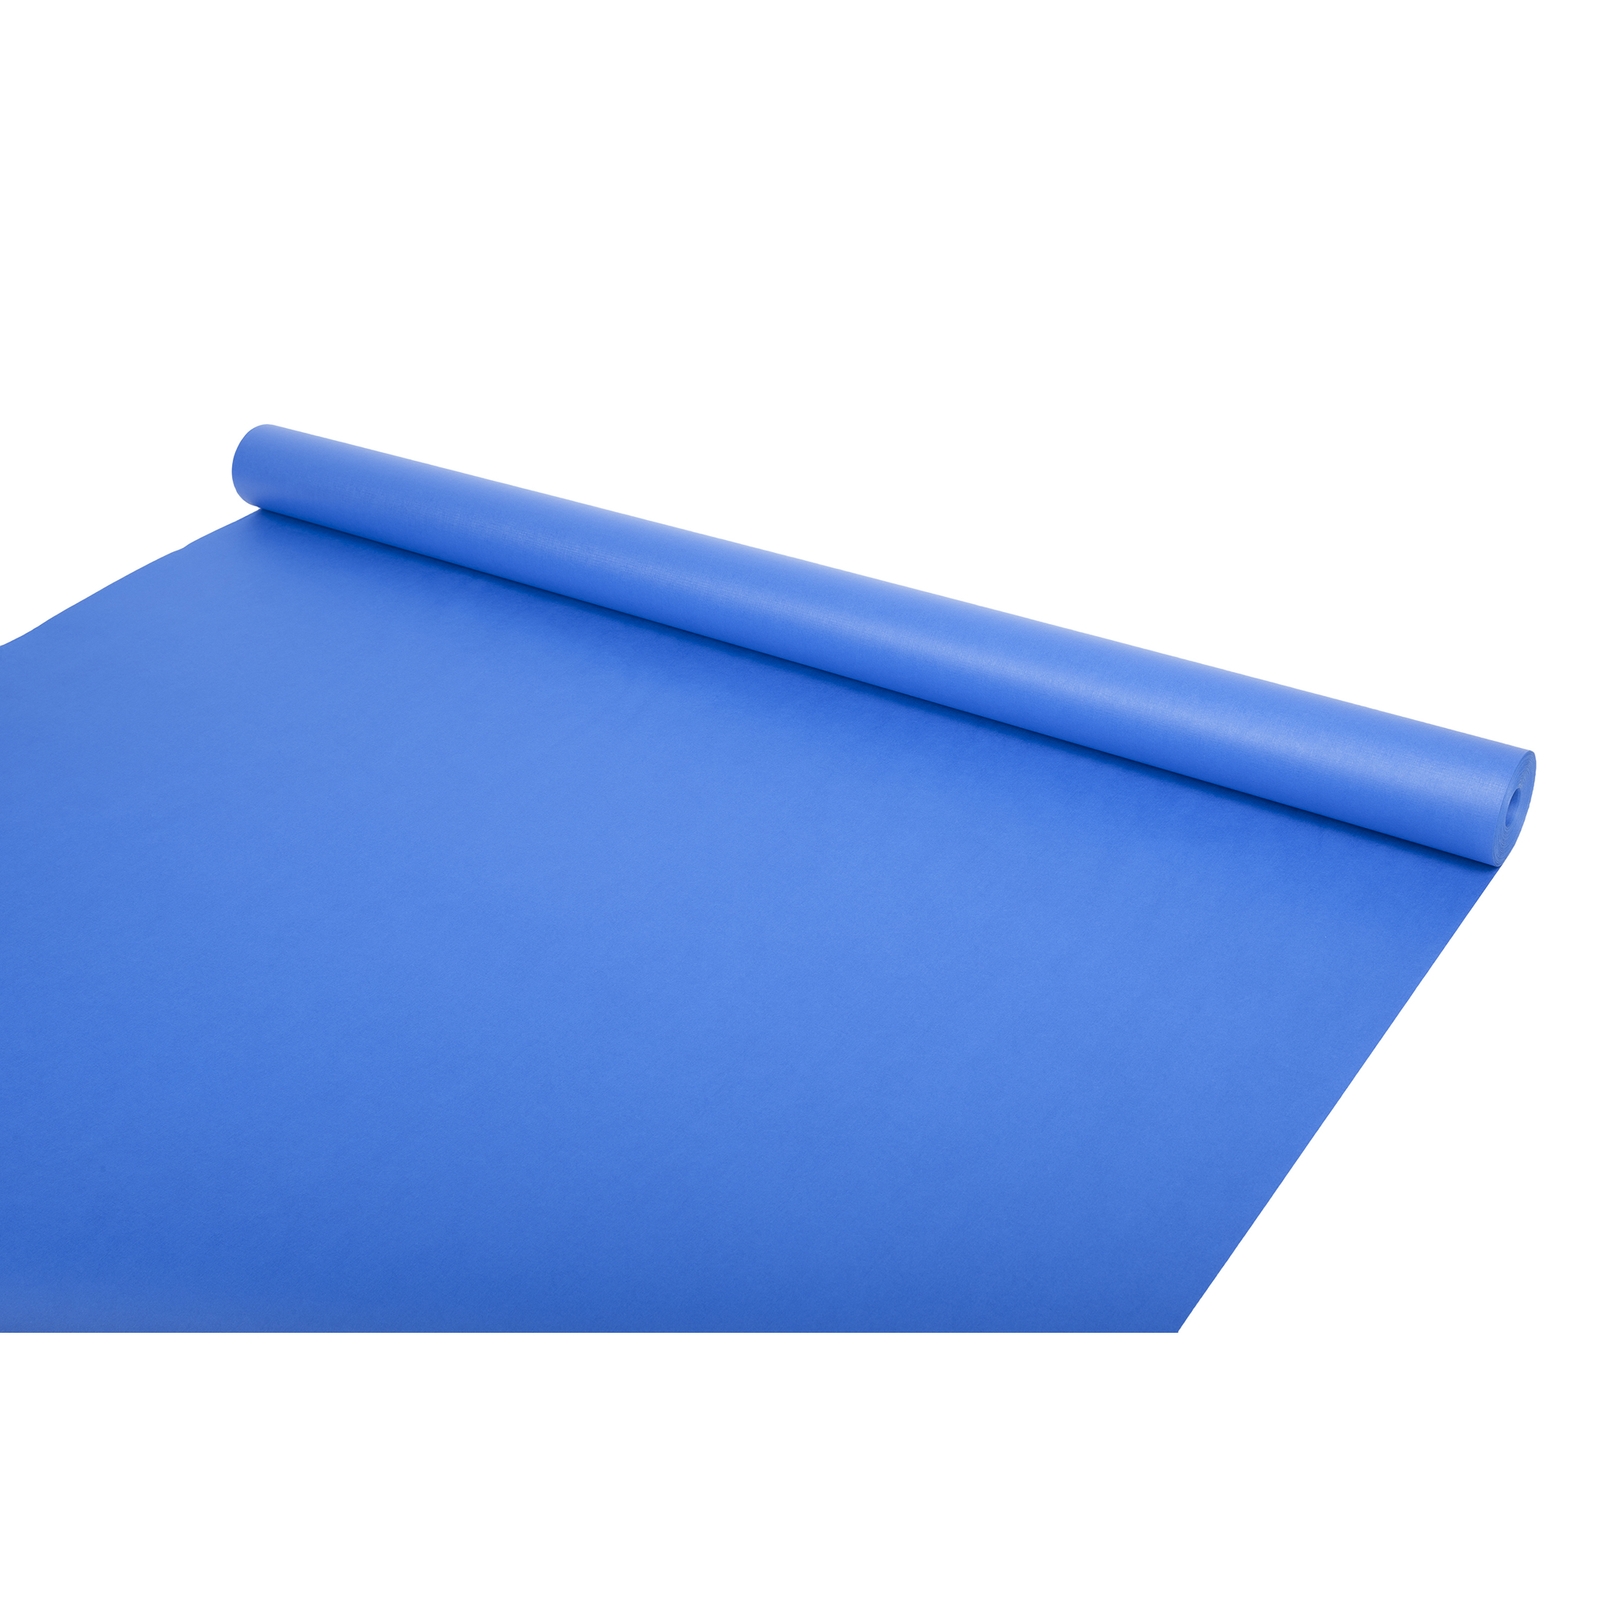 EduCraft Azure Blue Jumbo Durafrieze Poster Display Roll - 1020mm x 25m - Each